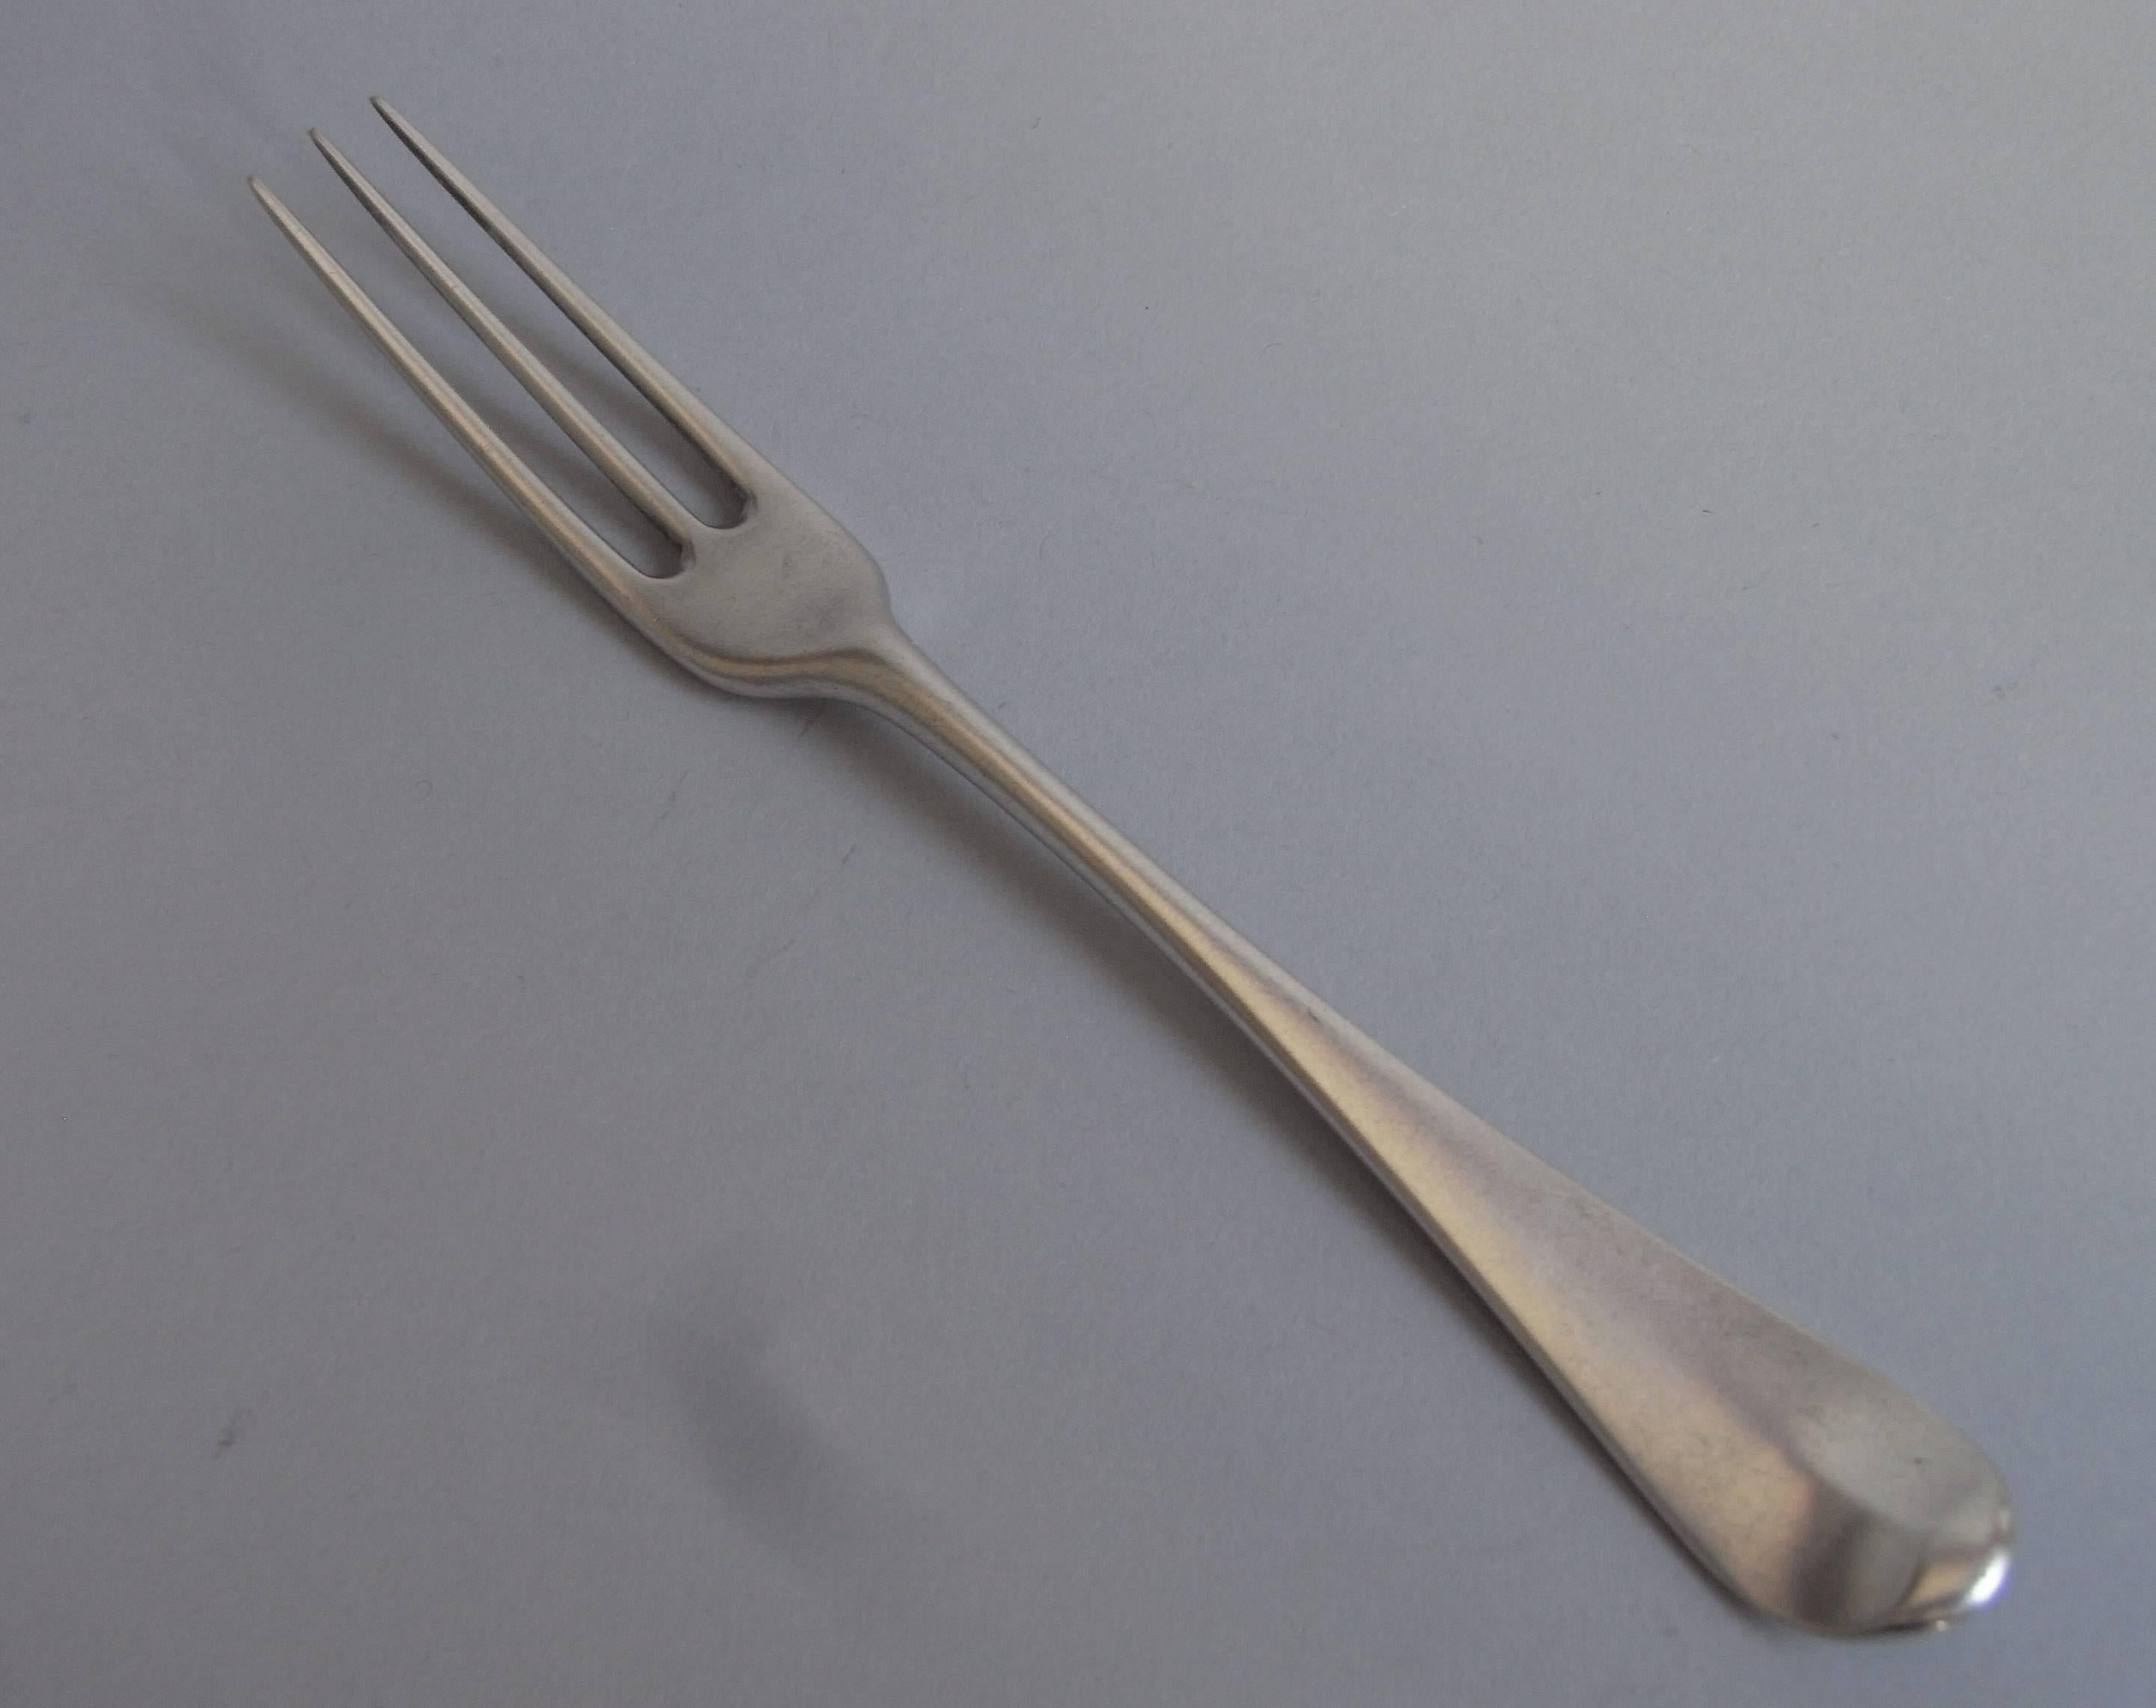 antique forks 3 prong